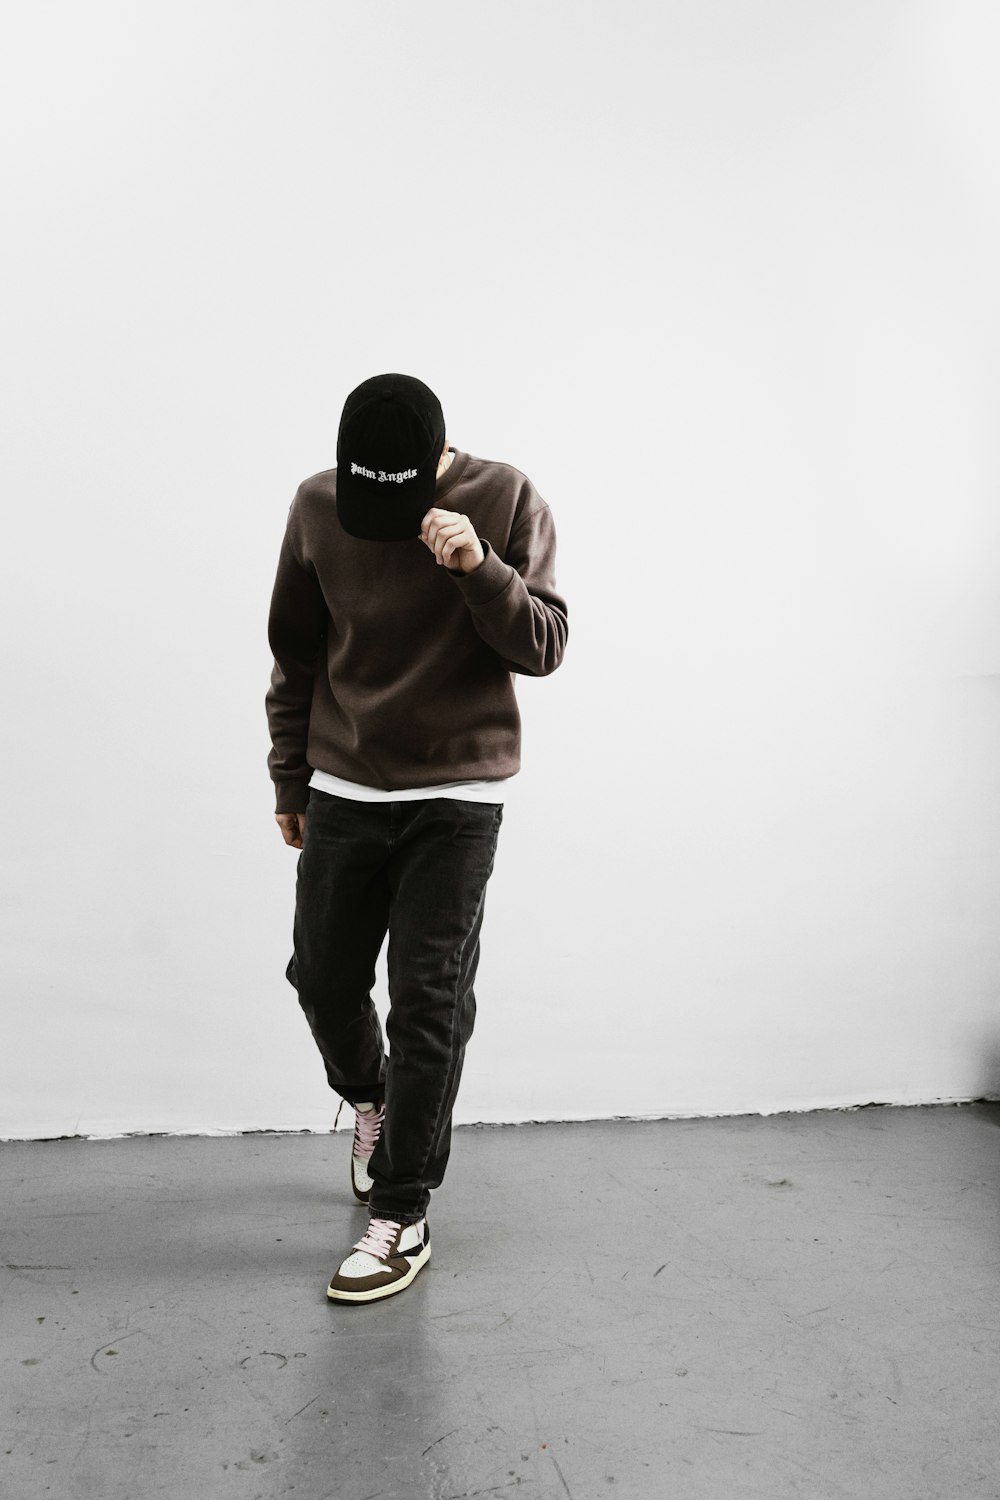 a man in a brown hoodie is walking